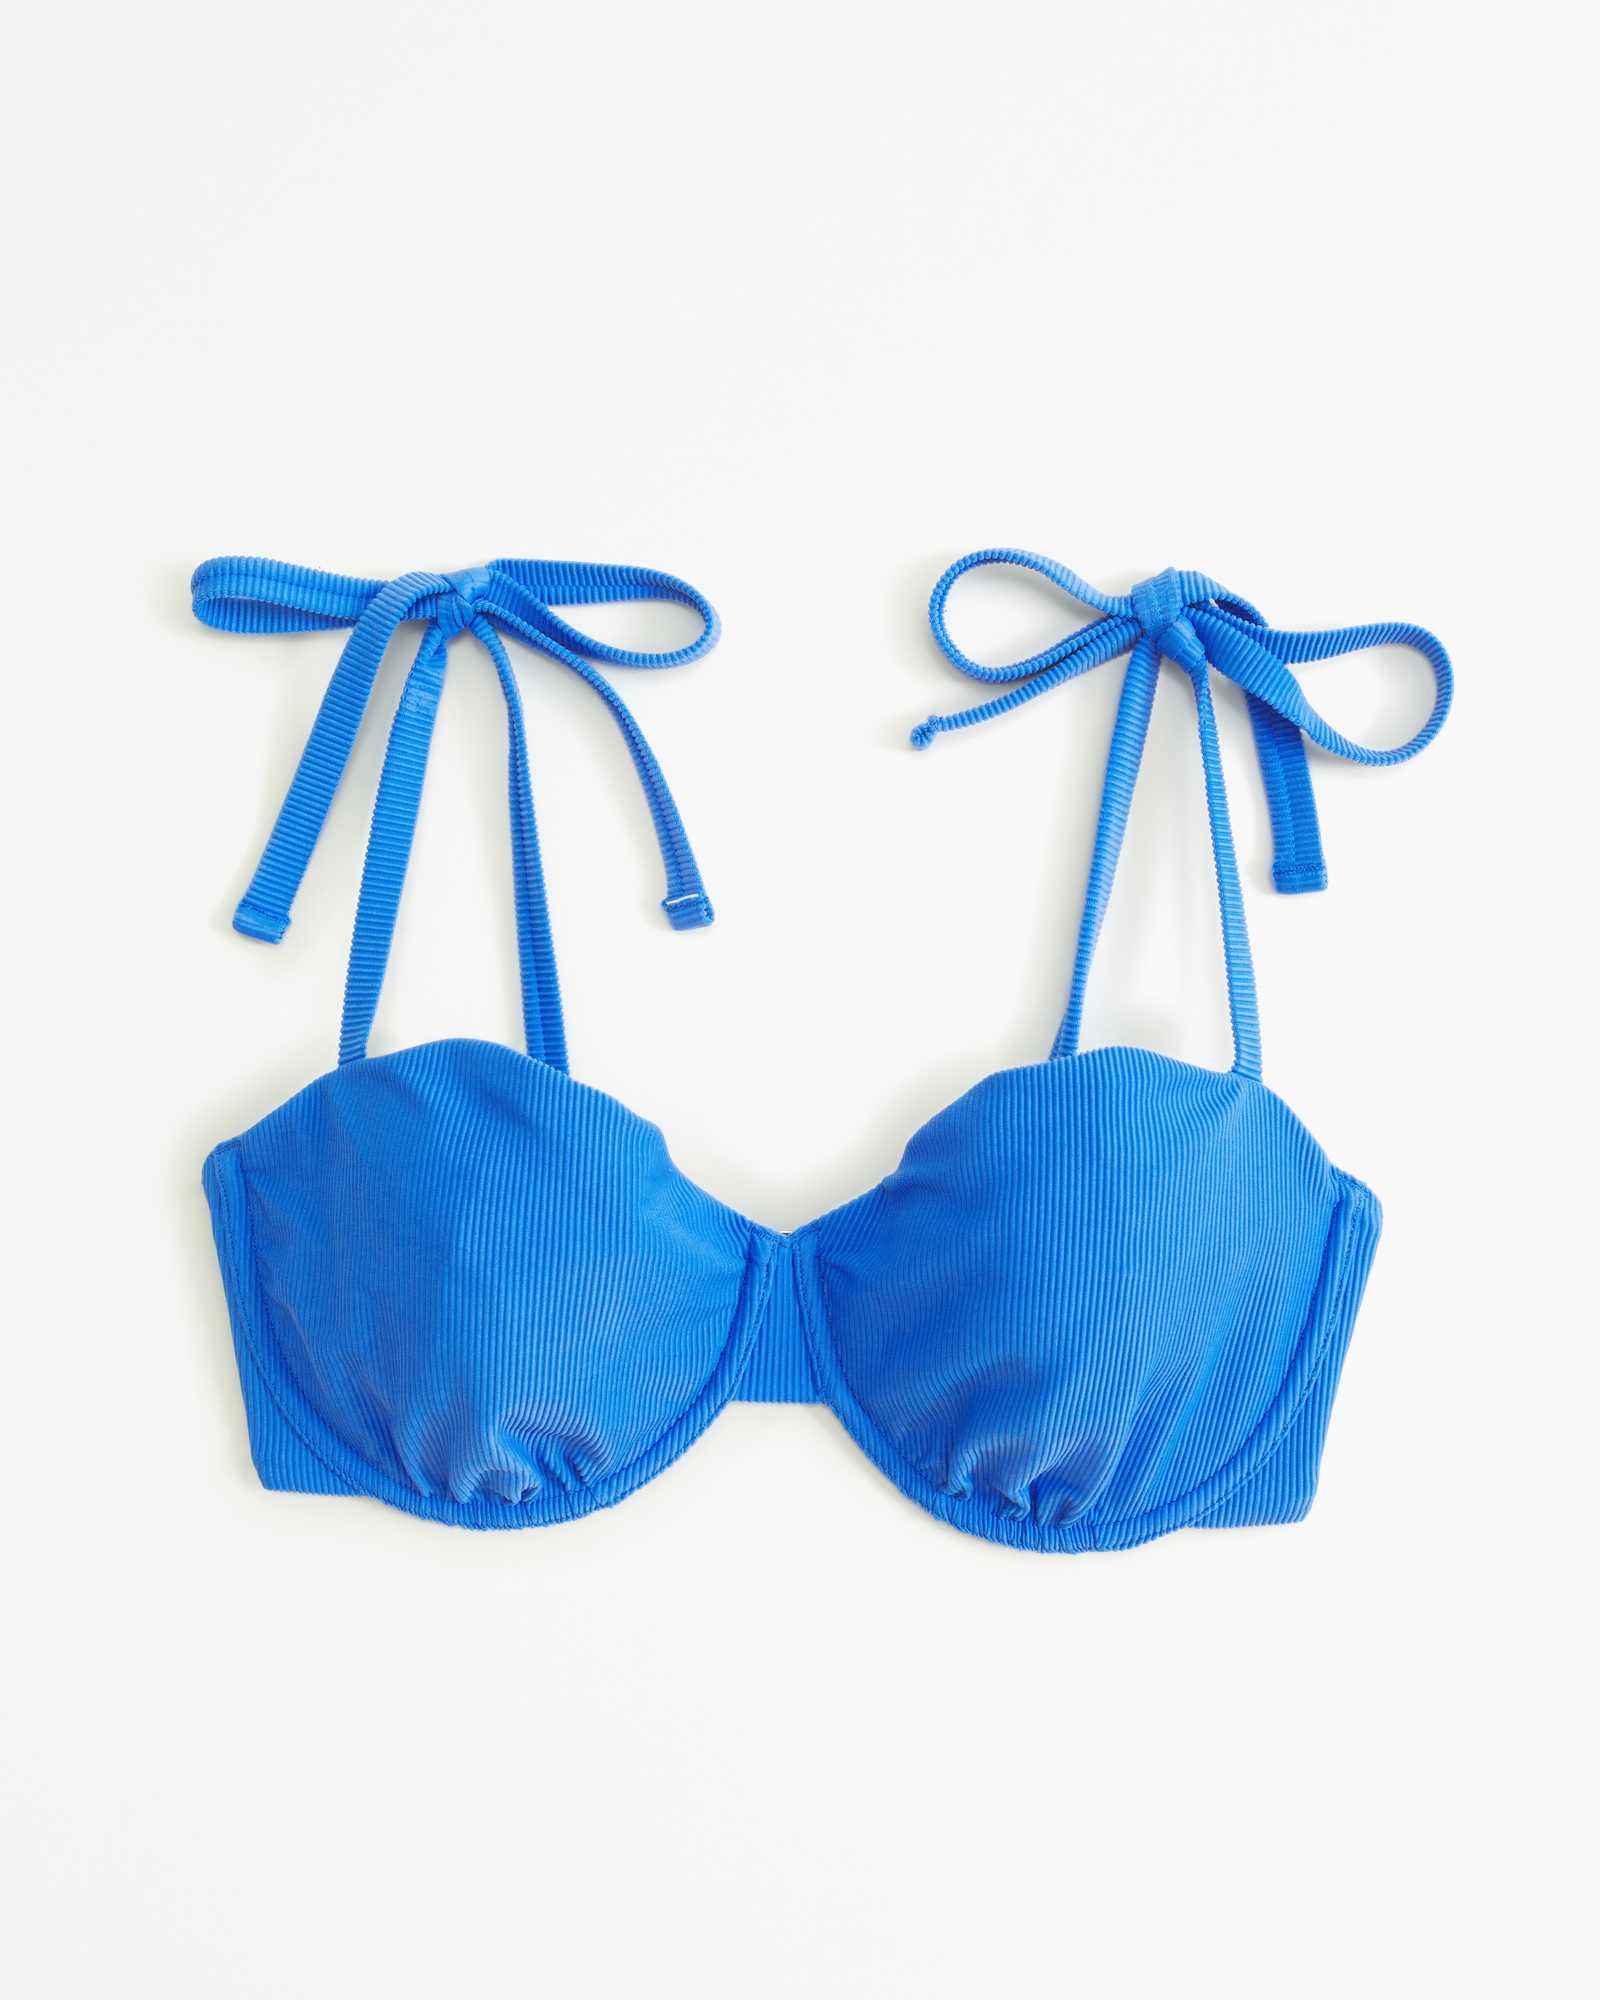 GAP Plunge Bralette Bikini Top Royal Blue Size M item #335983